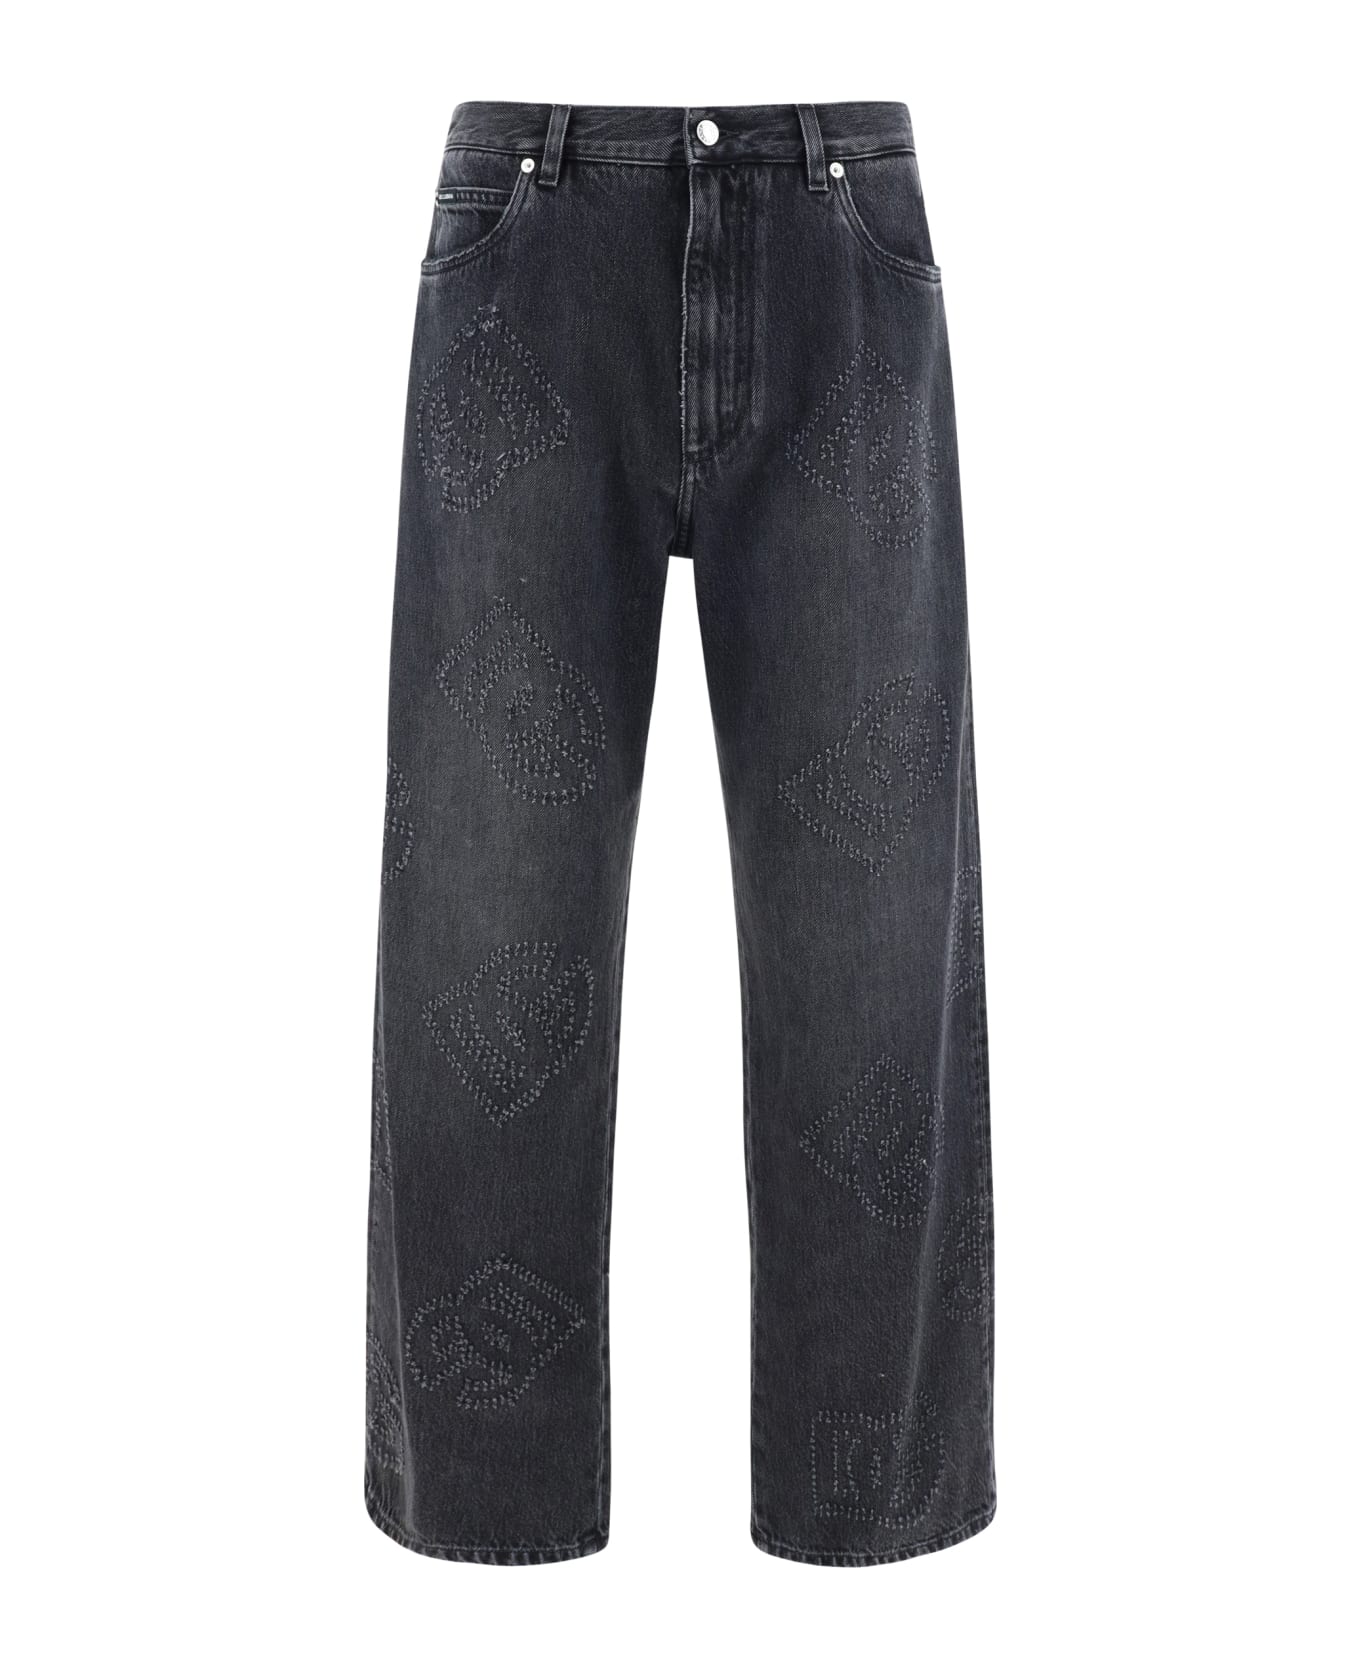 Dolce & Gabbana Denim Pants - Variante Abbinata